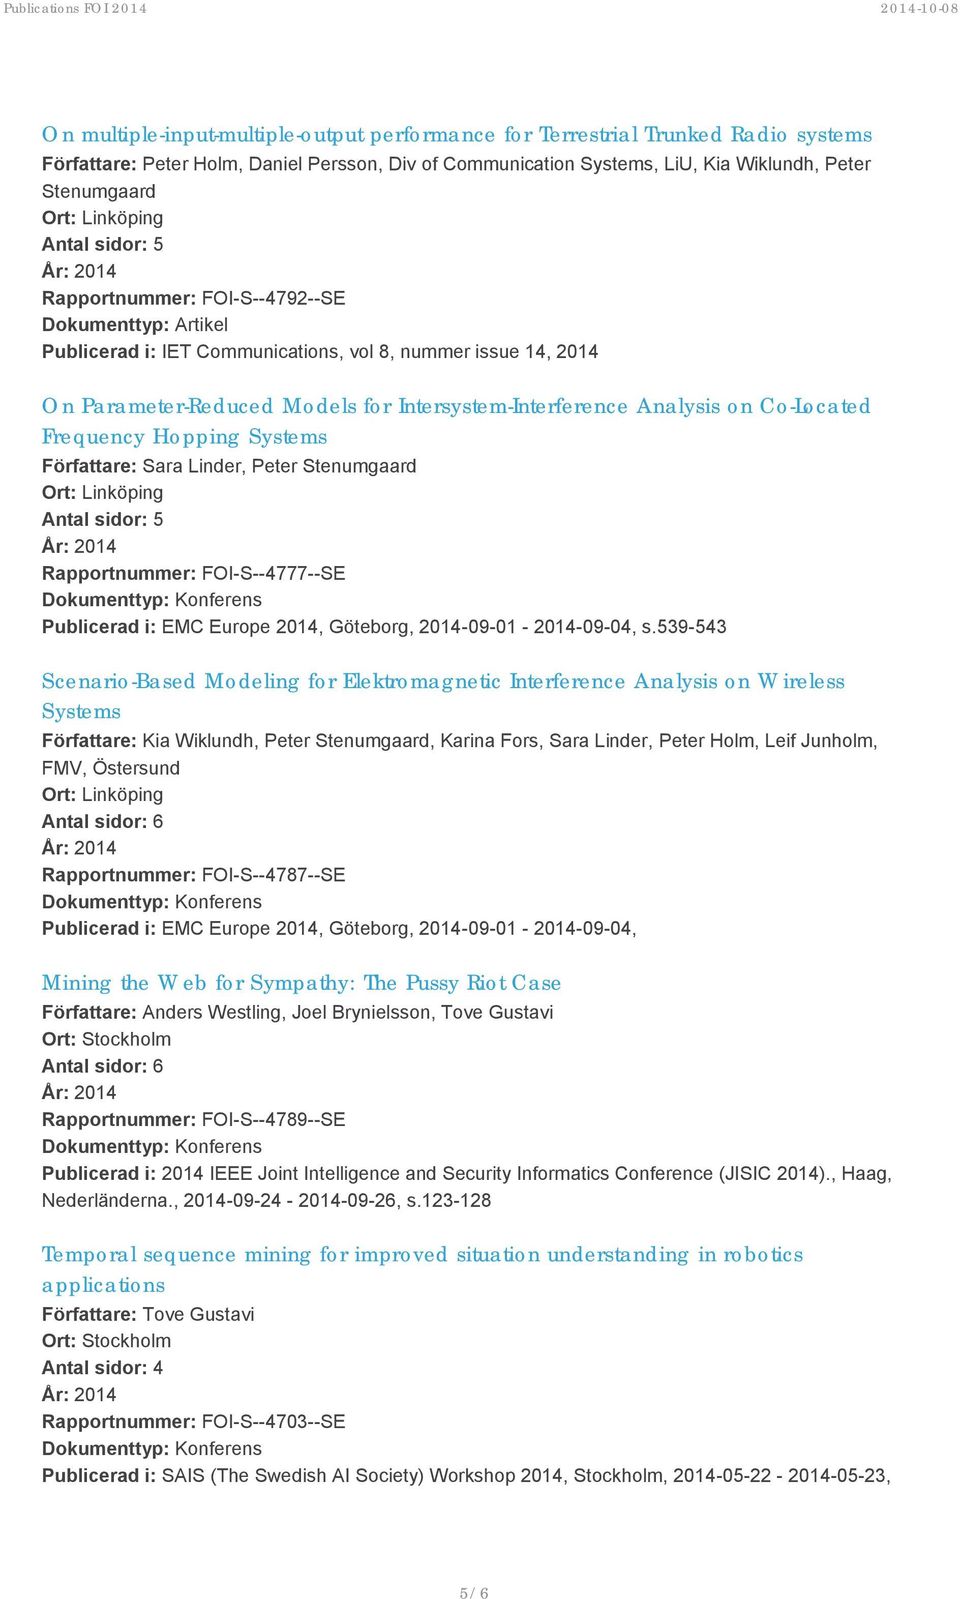 Författare: Sara Linder, Peter Stenumgaard Rapportnummer: FOI-S--4777--SE Publicerad i: EMC Europe 2014, Göteborg, 2014-09-01-2014-09-04, s.